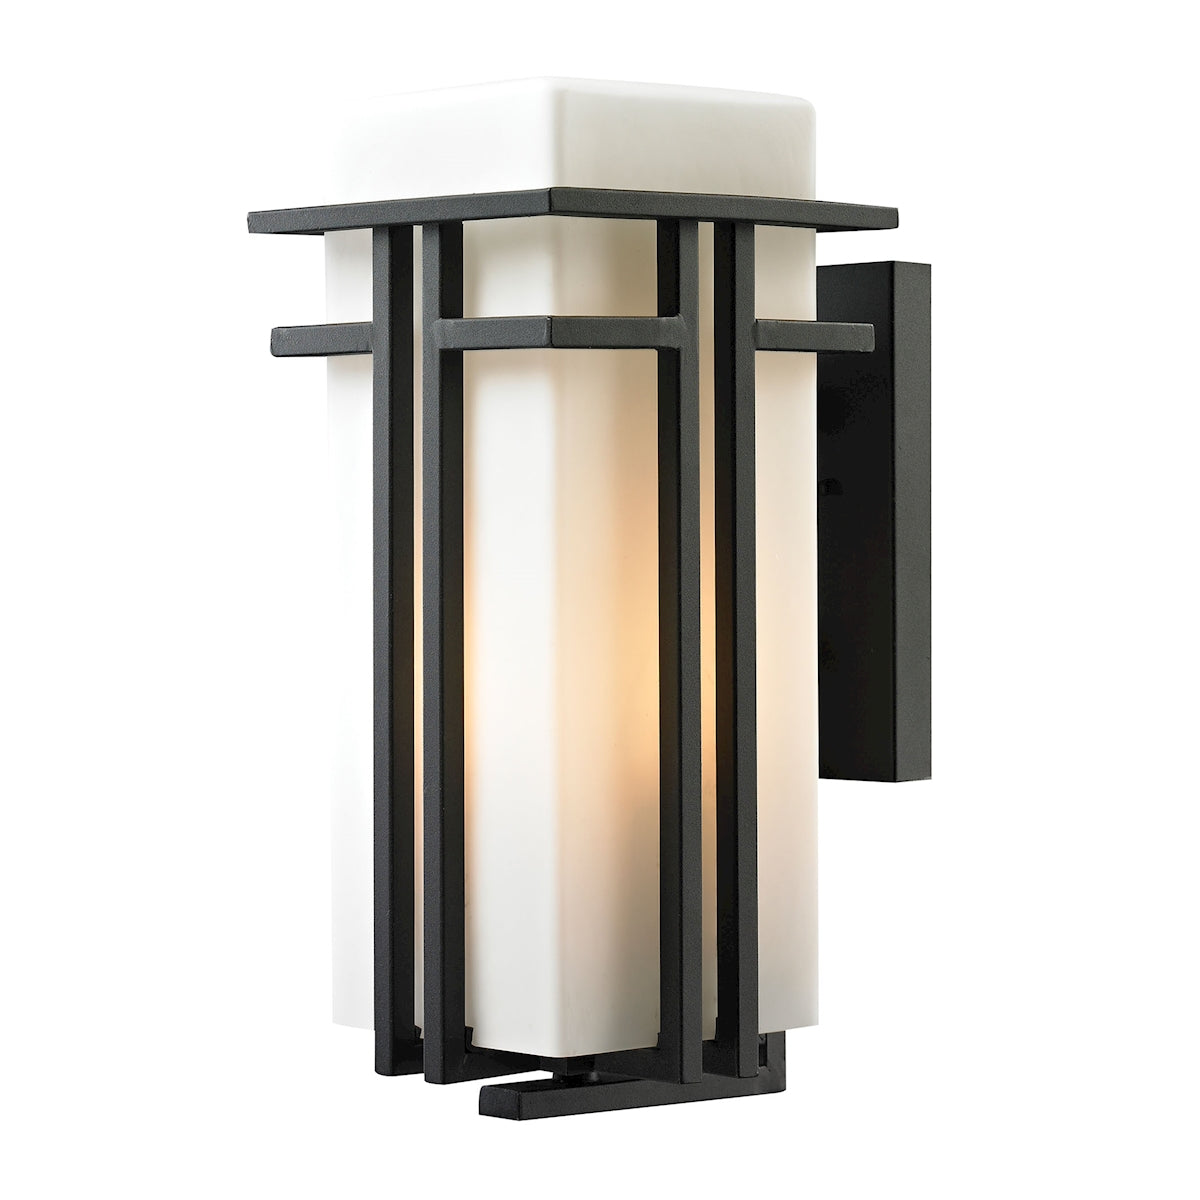 ELK Lighting 45087/1 Croftwell 1-Light Outdoor Wall Lamp in Textured Matte Black